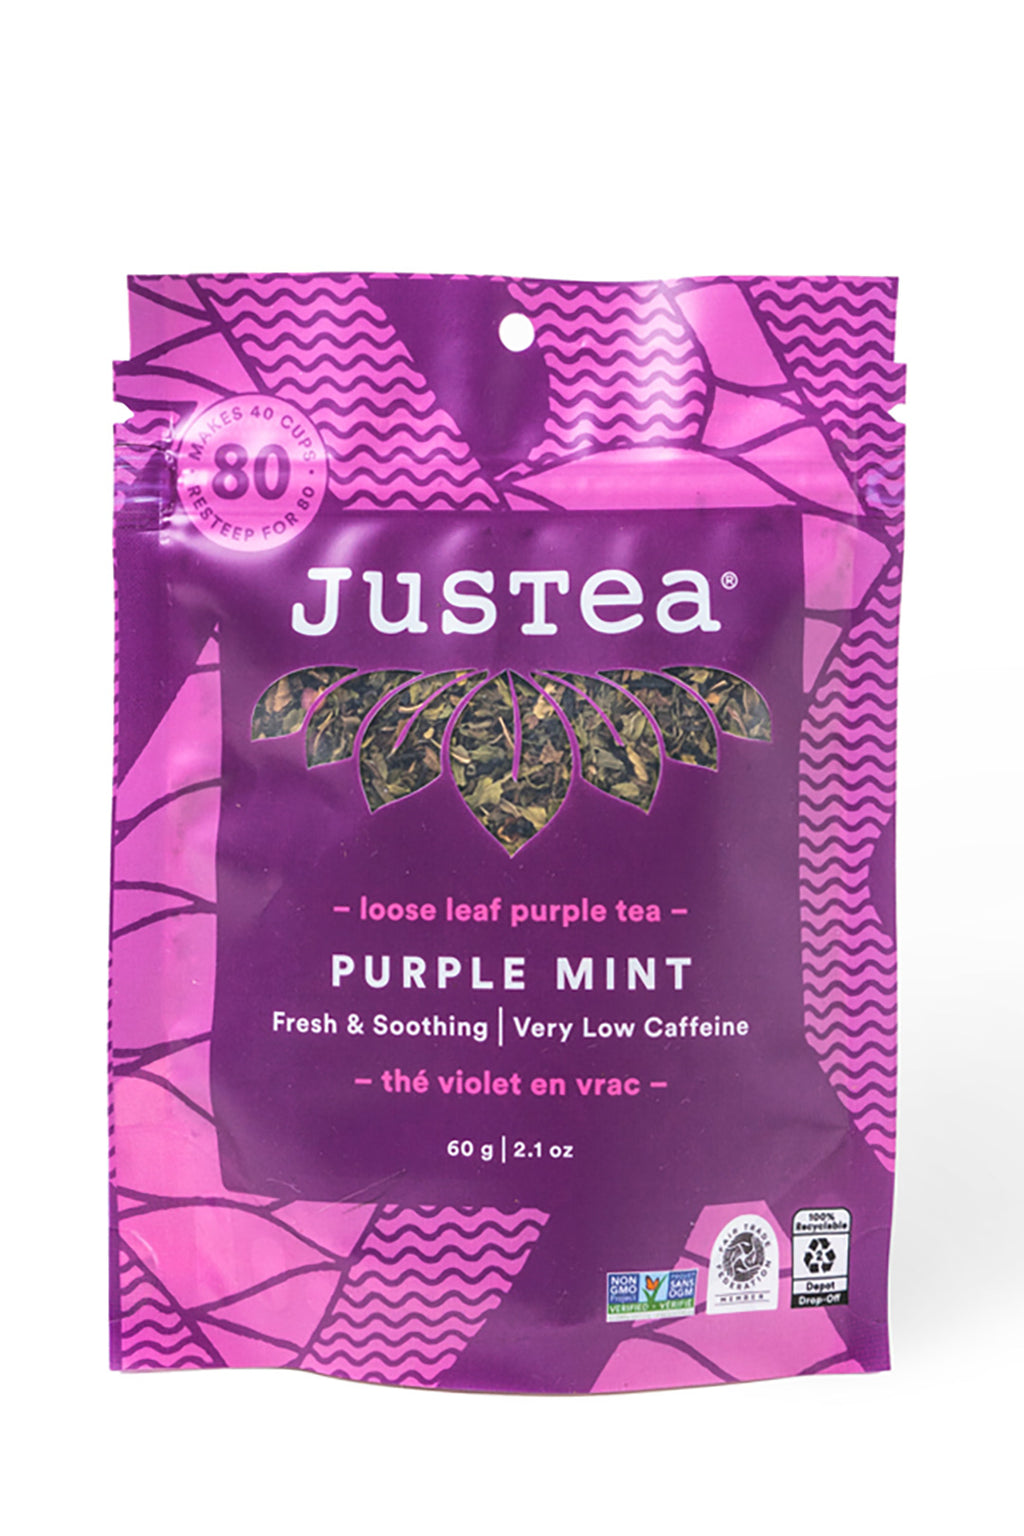 JusTea Purple Mint Loose Leaf Tea